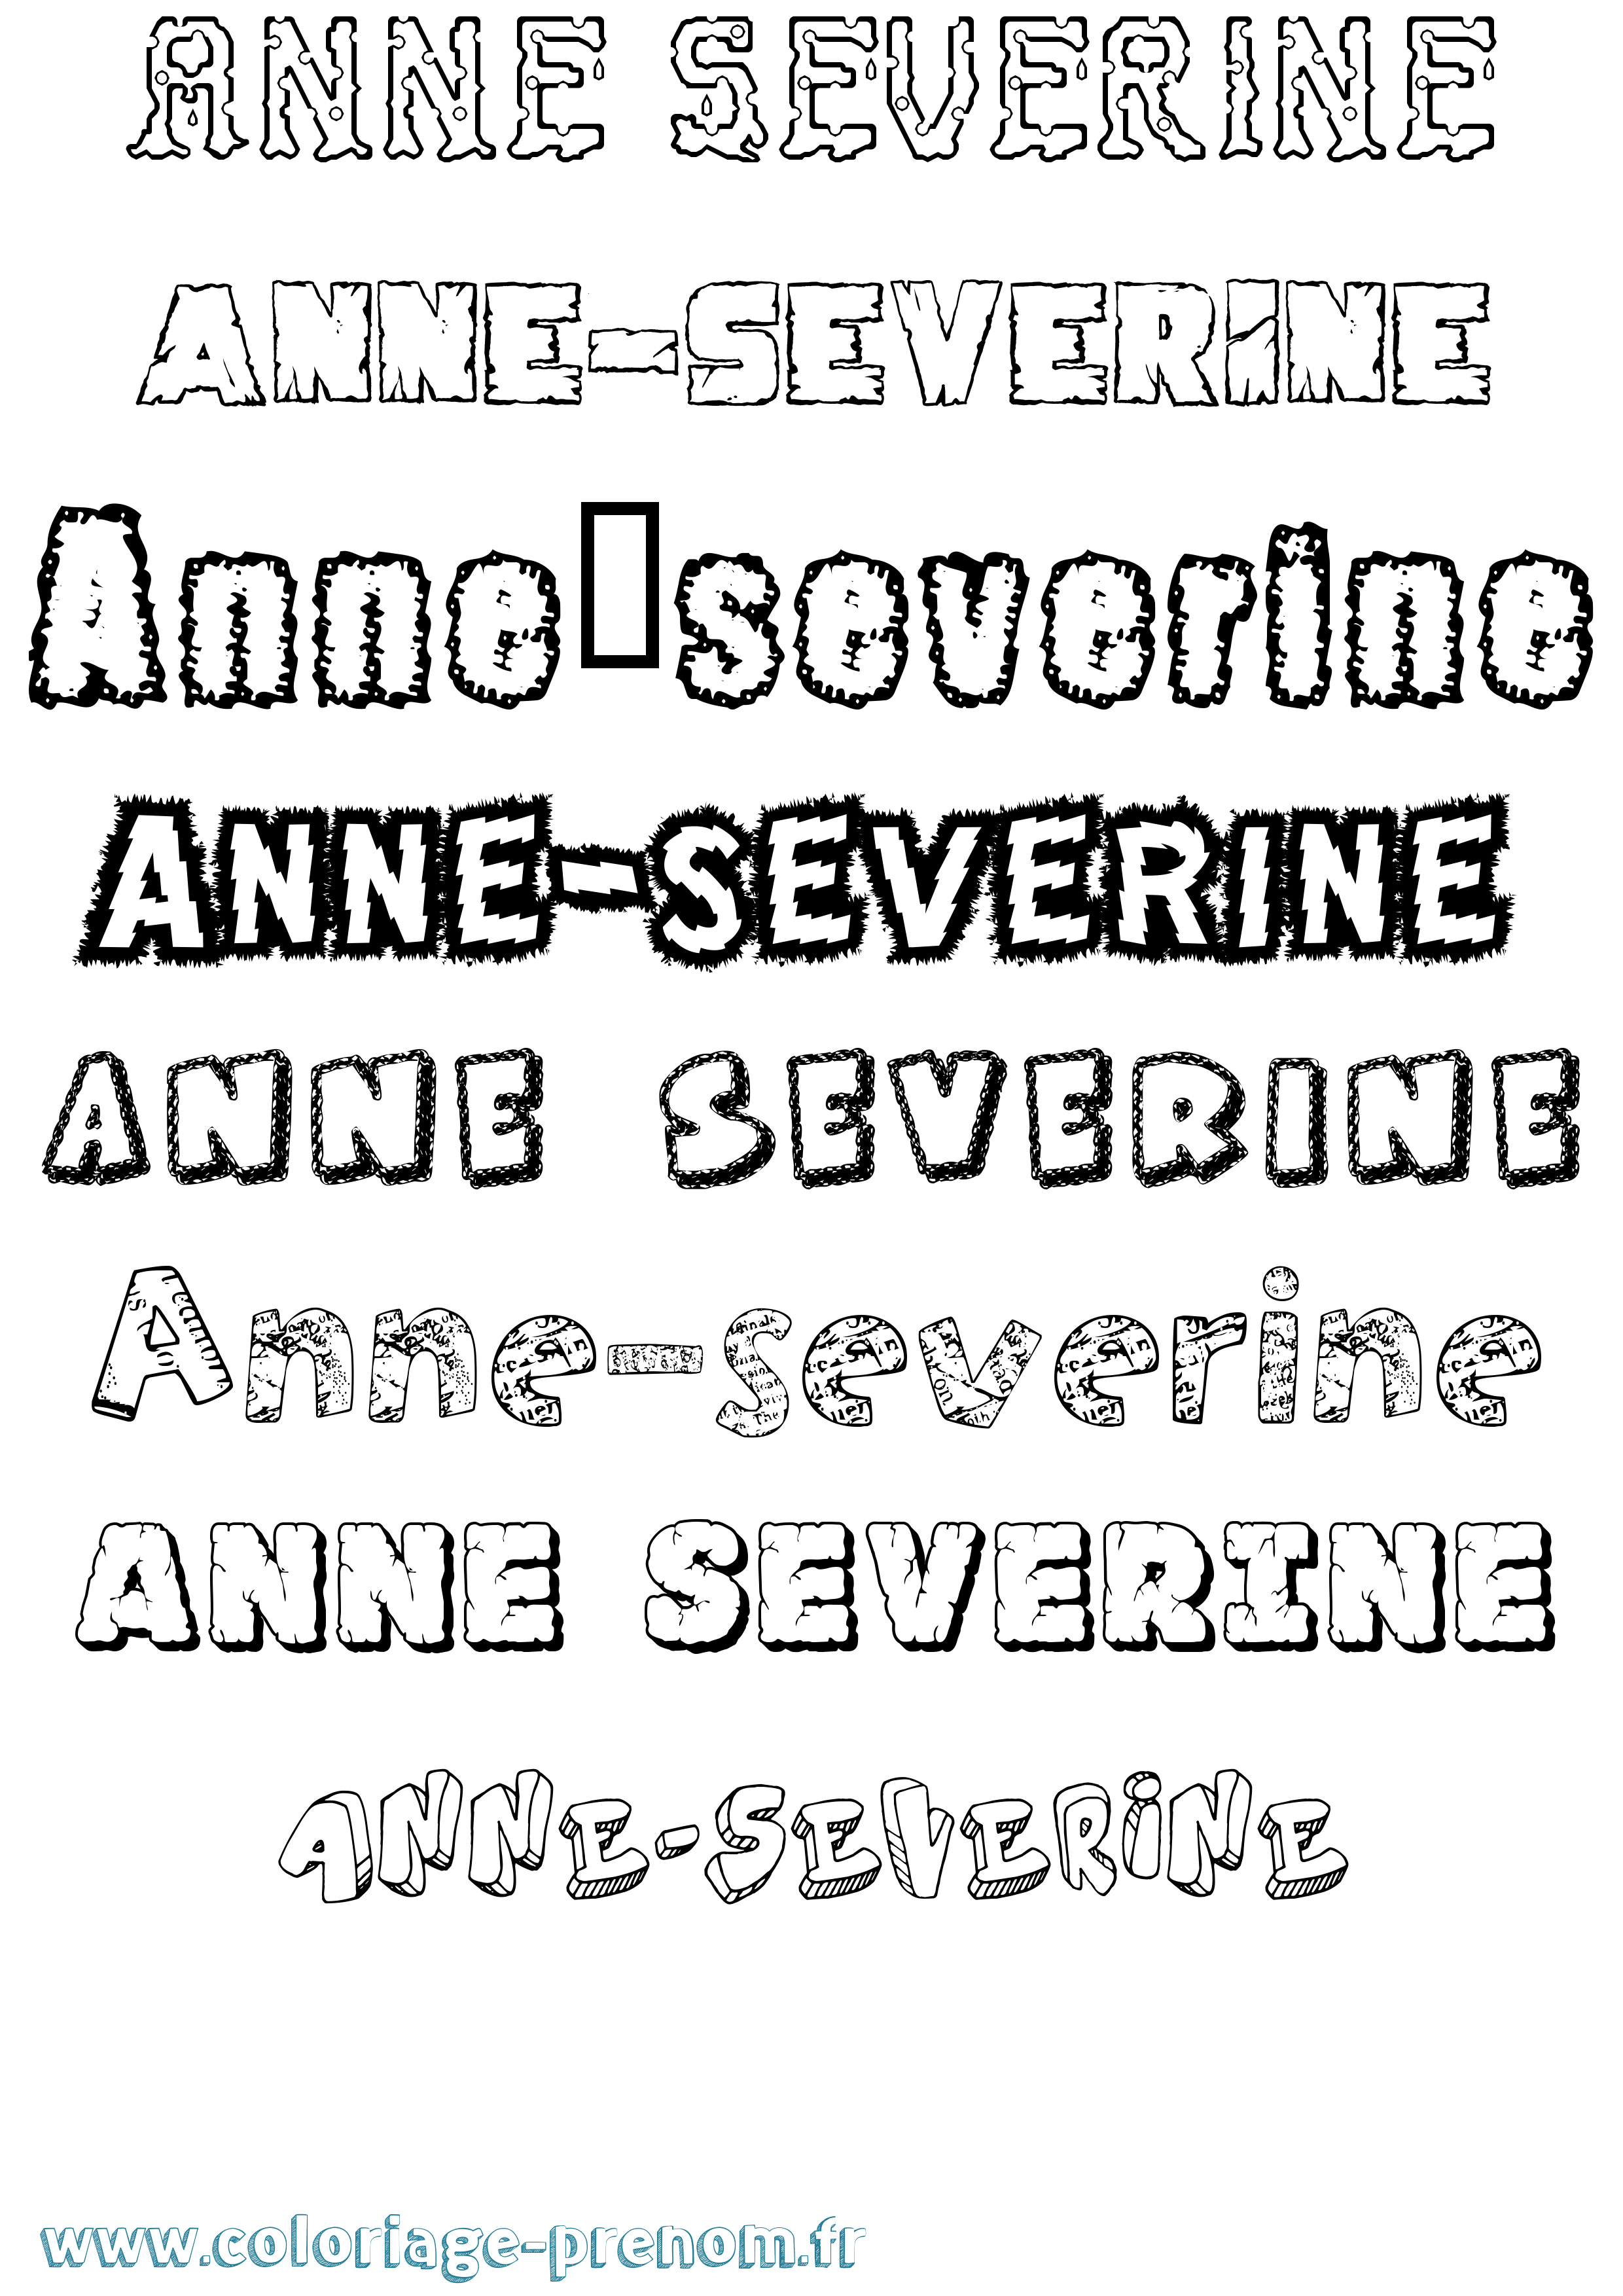 Coloriage prénom Anne-Severine Destructuré